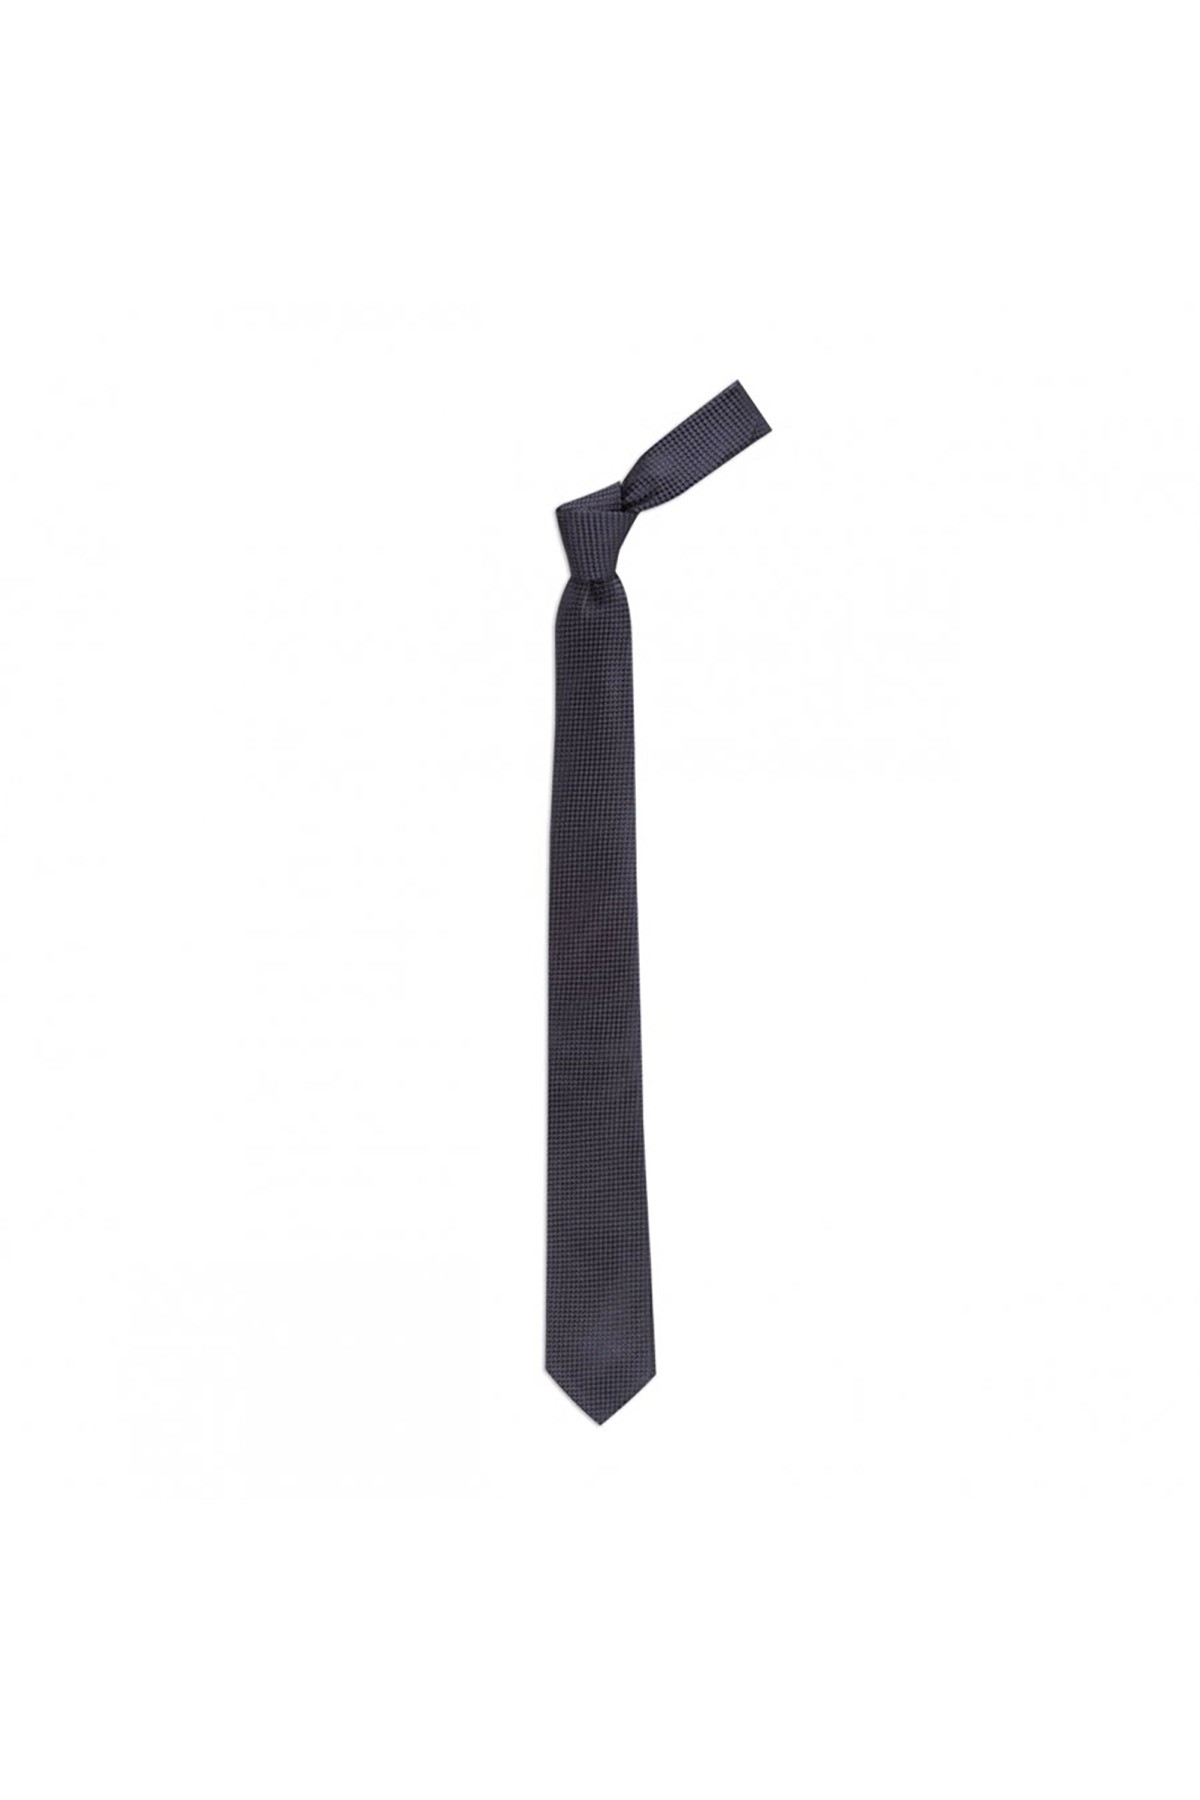 6 cm genişliğinde ince ipek kravat - Koyu gri